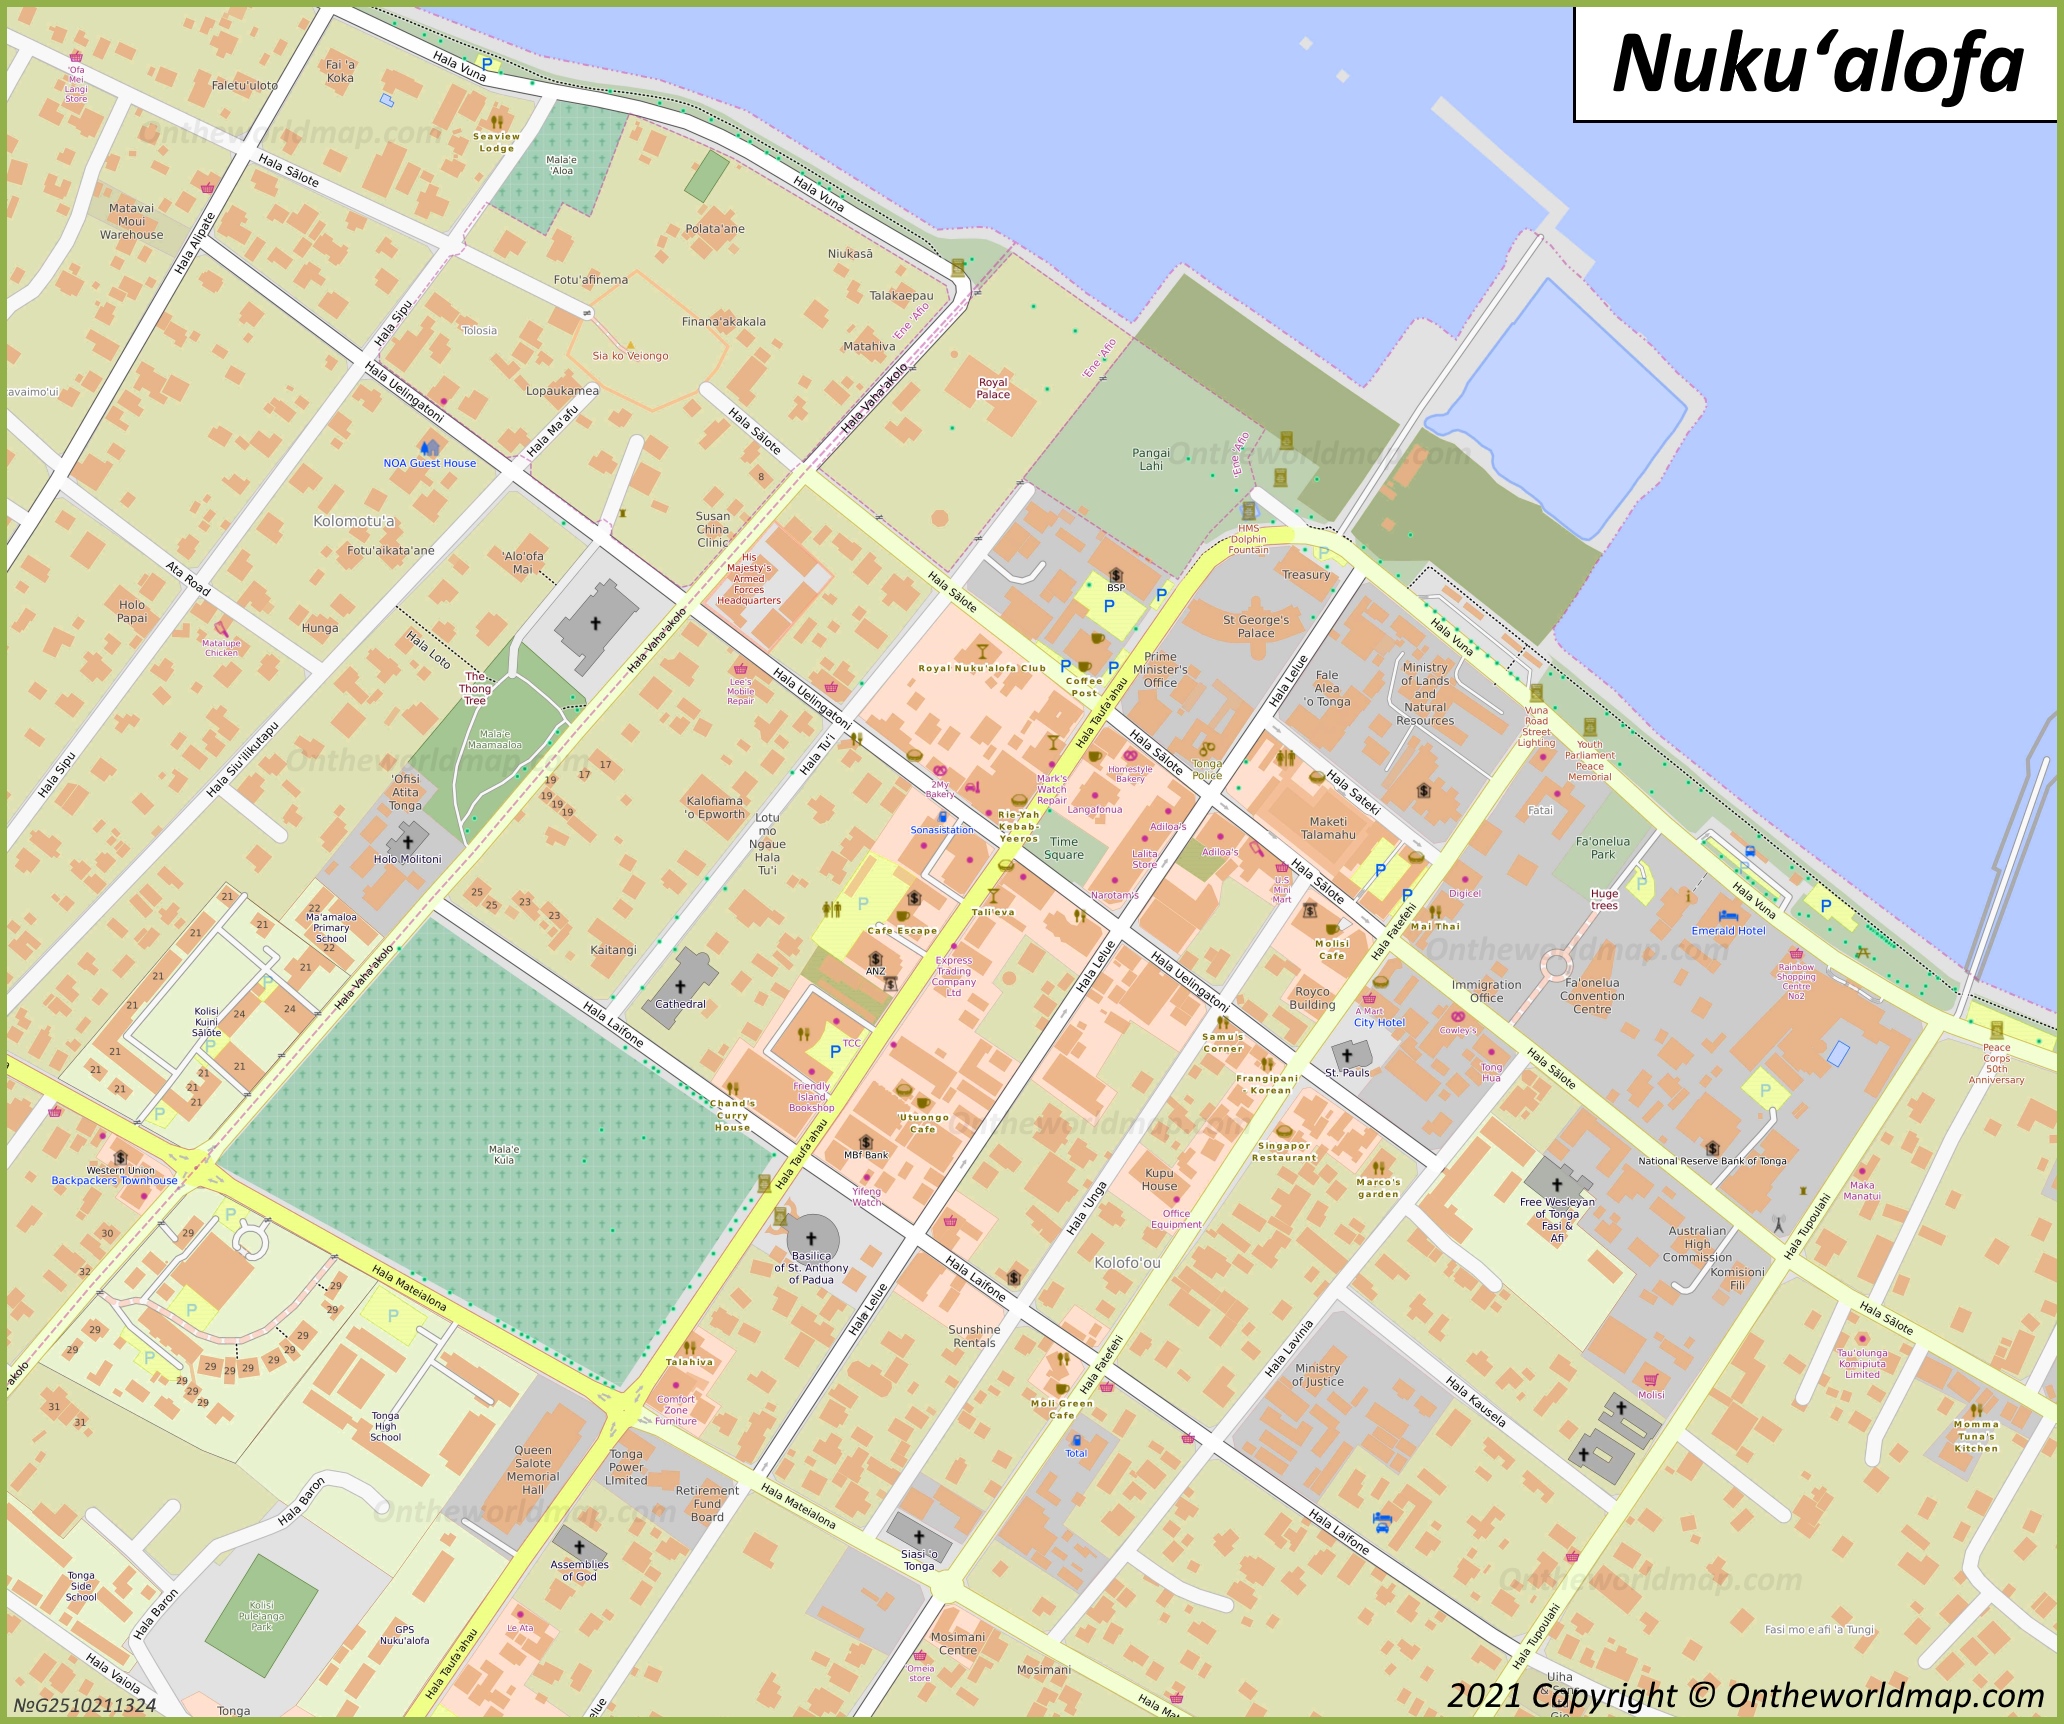 Nukuʻalofa City Center Map